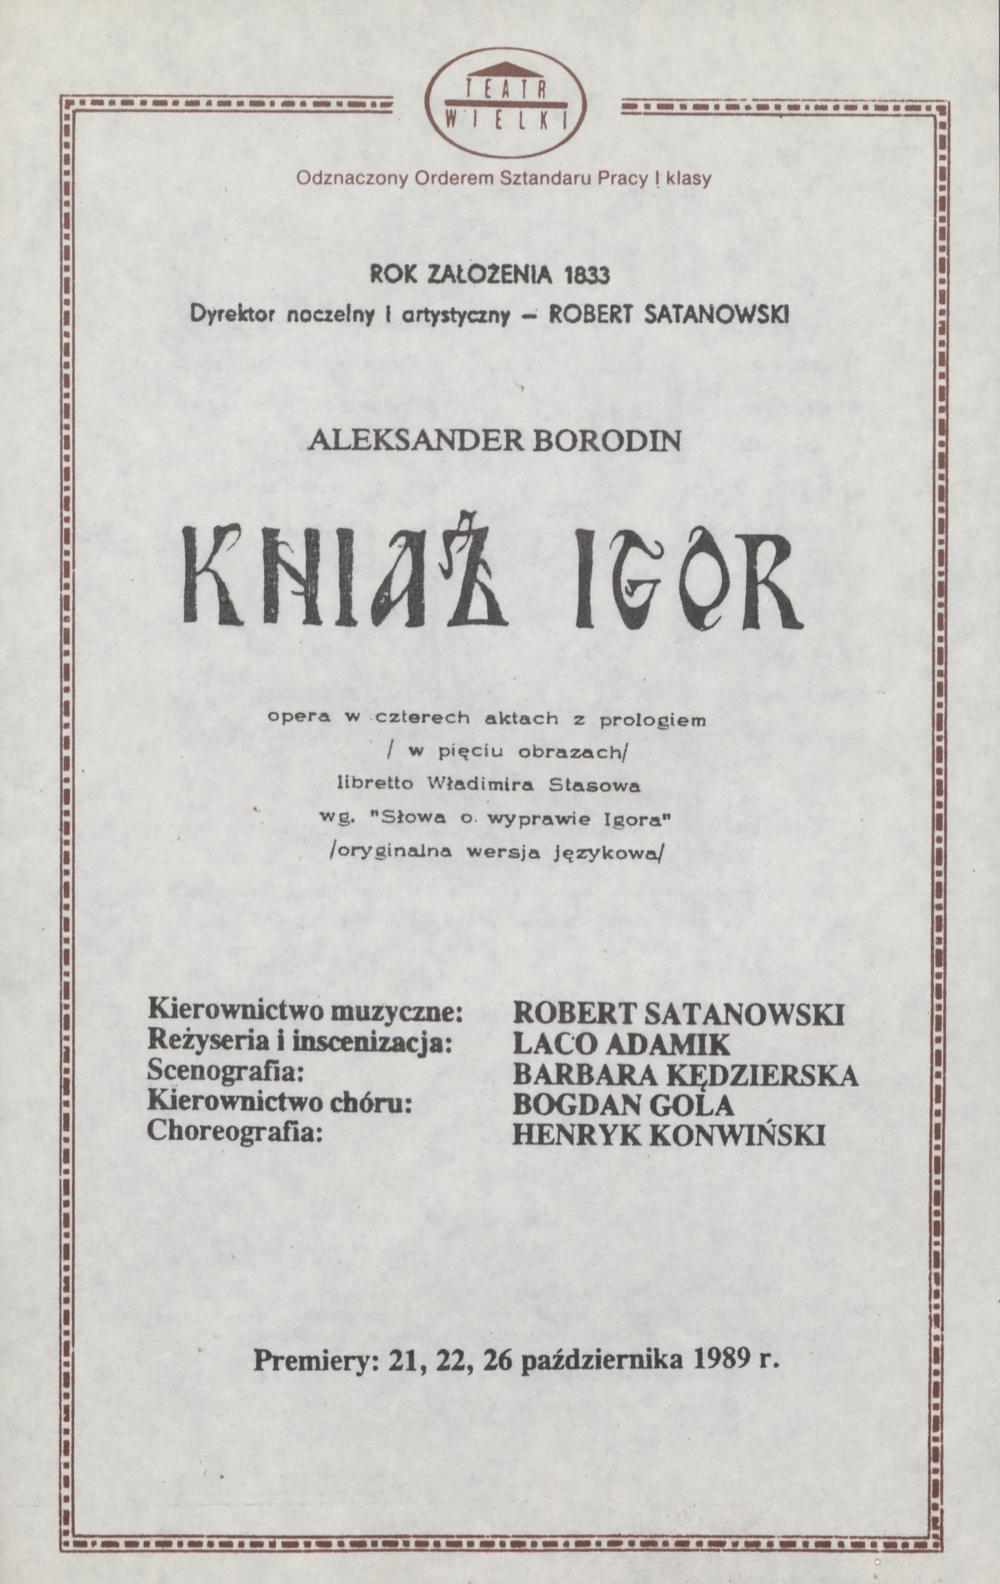 Wkładka obsadowa „Kniaź Igor” Aleksander Borodin 24-06-1990